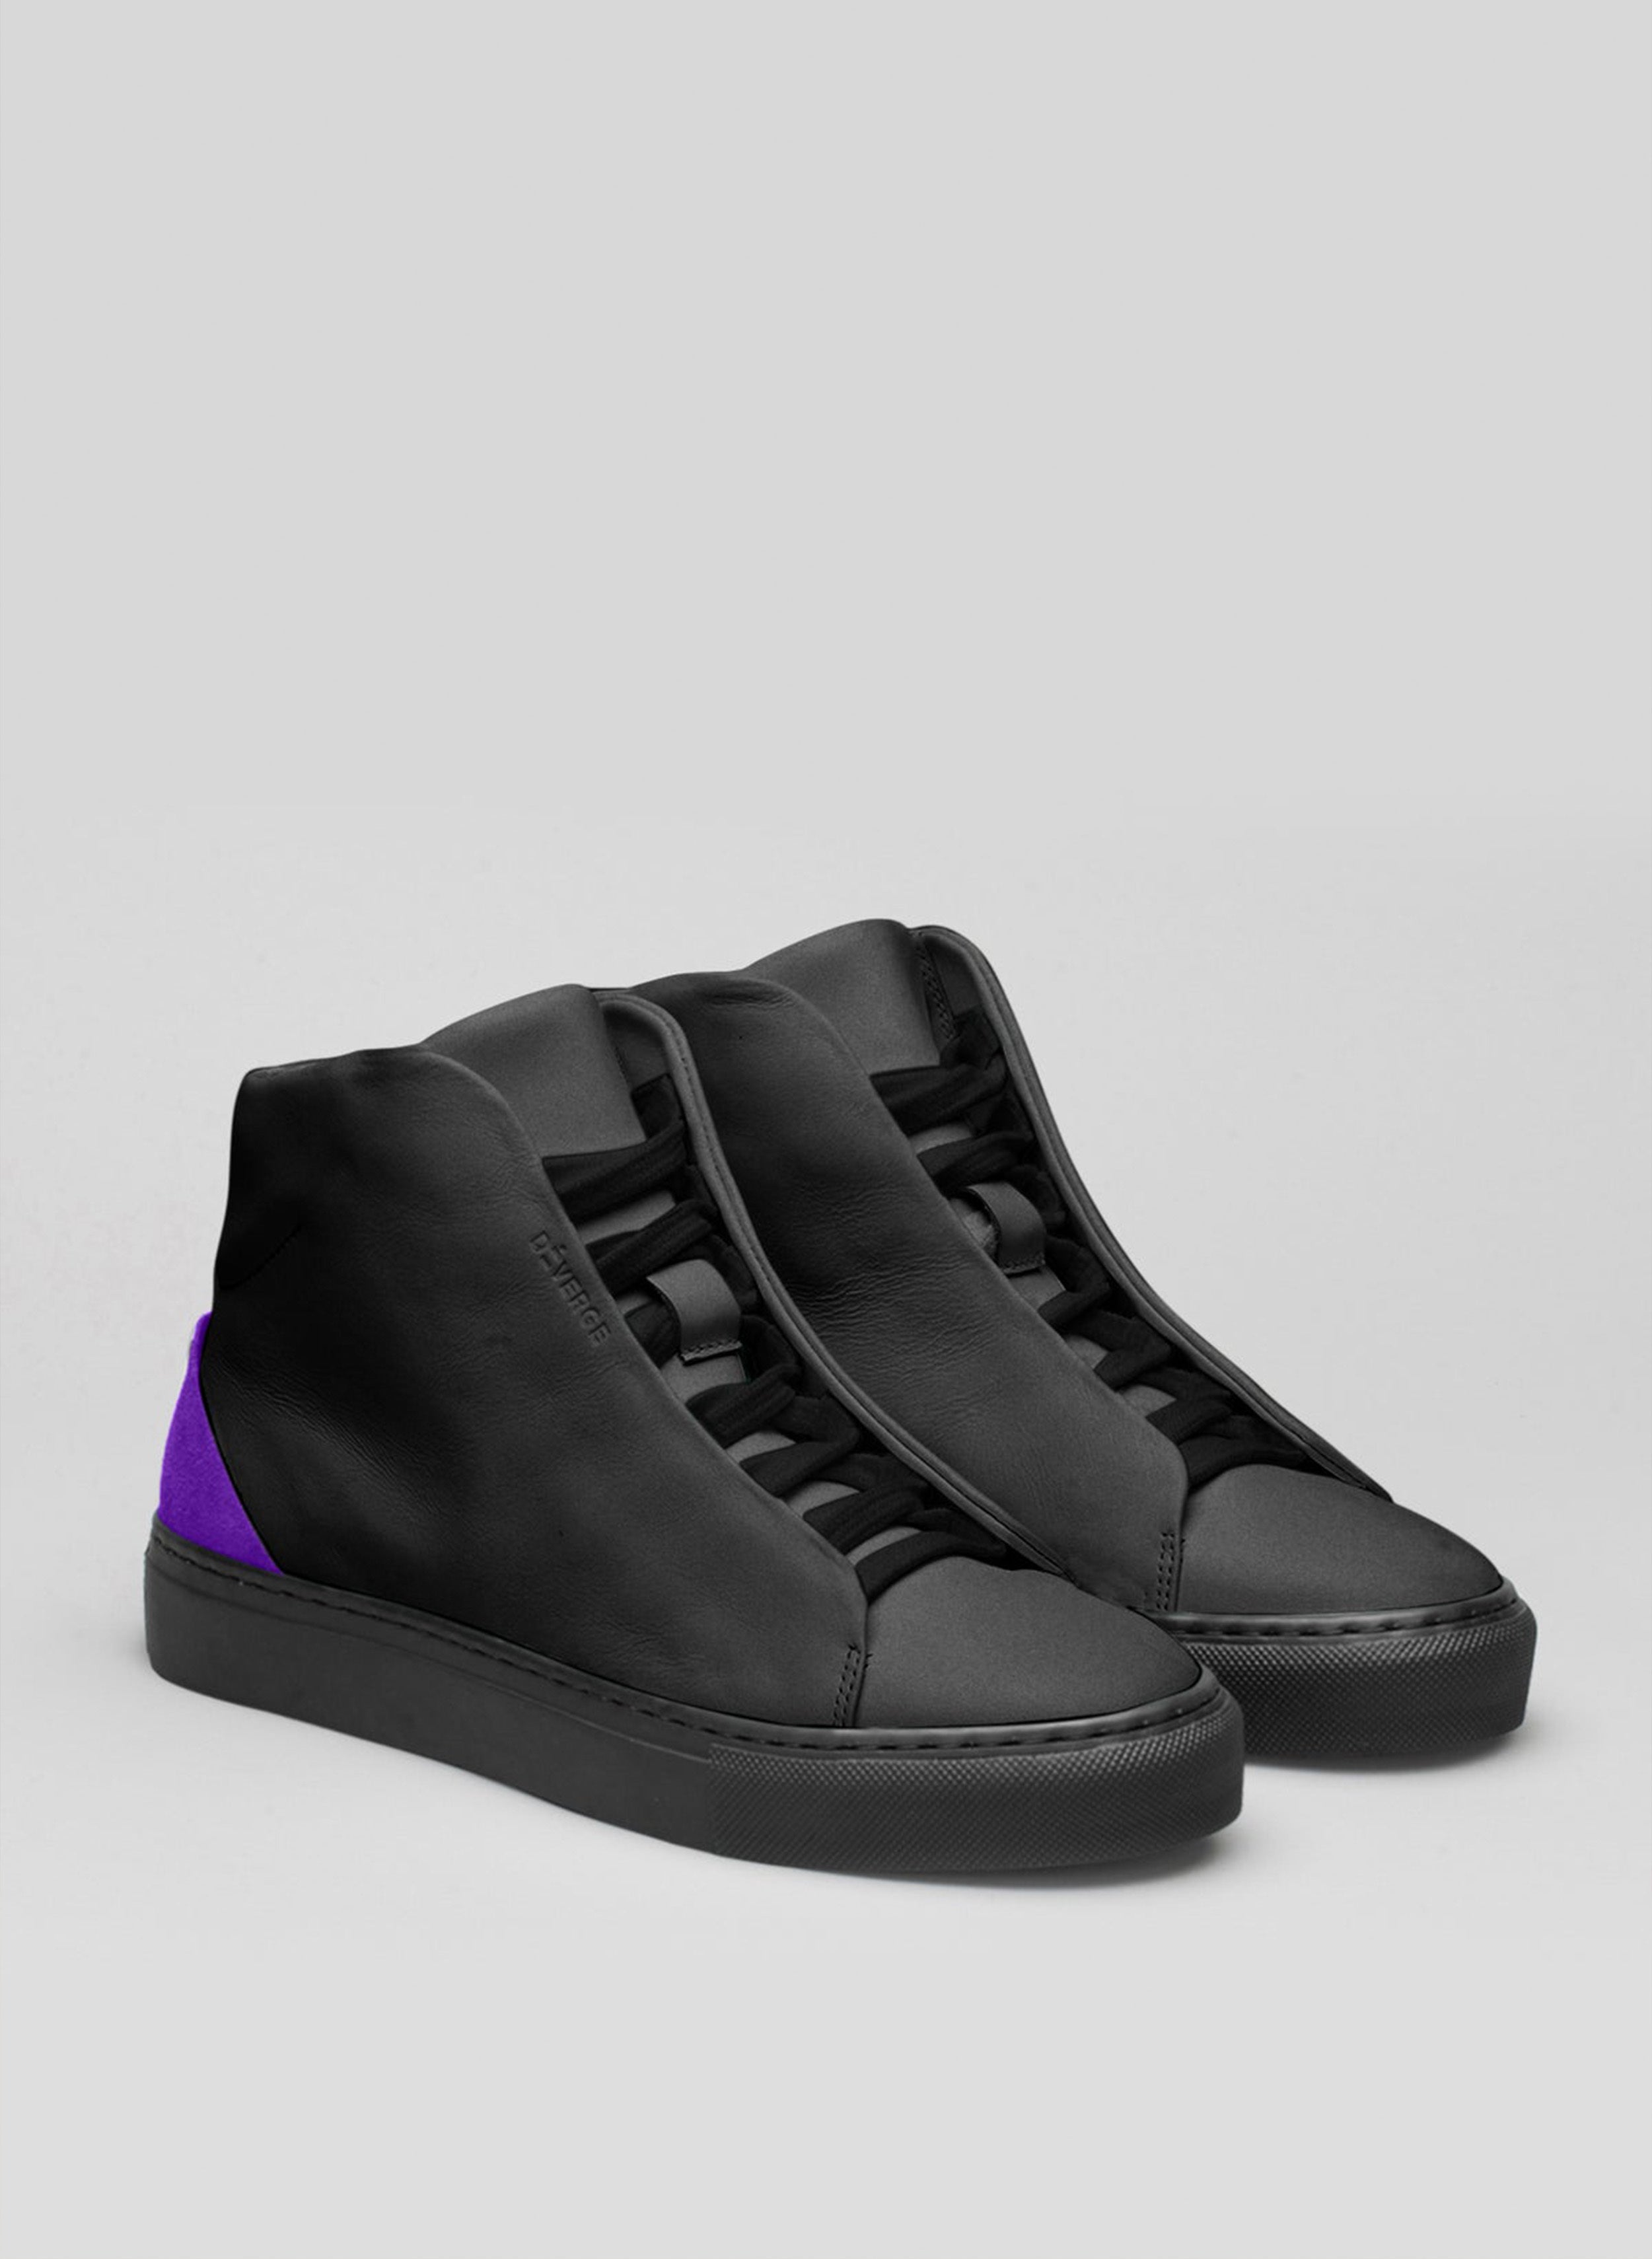 Un paio di scarpe alte nere e viola sneakers, in mostra le scarpe personalizzate di Diverge.